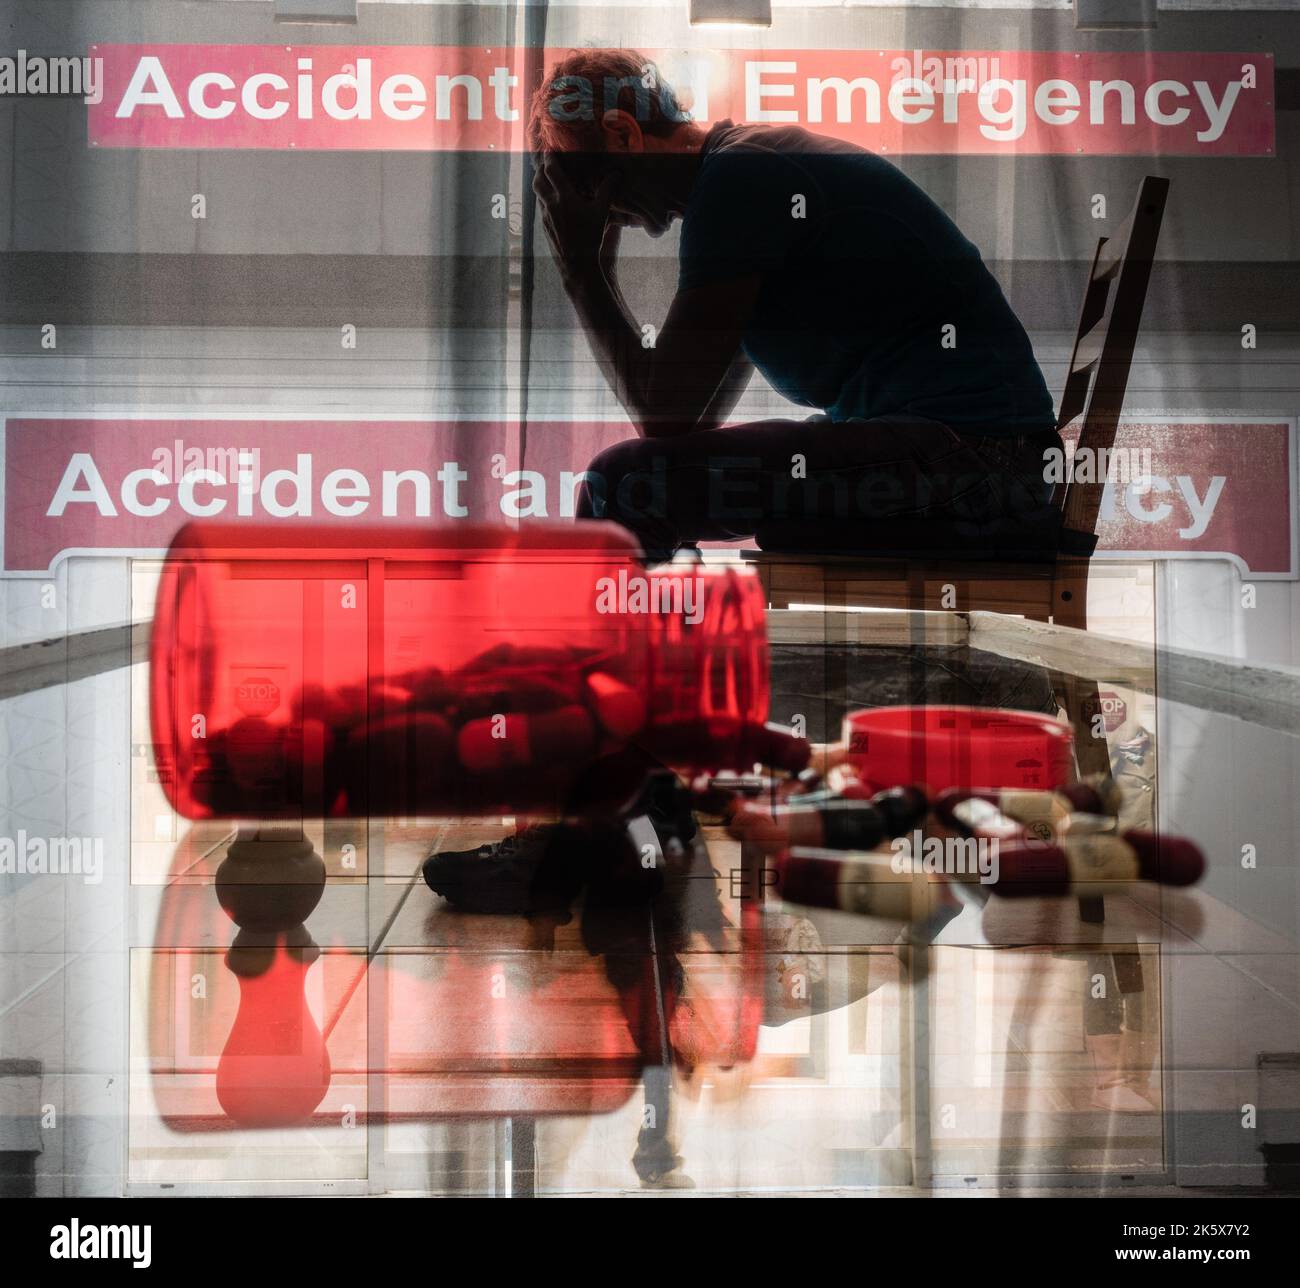 NHS Krankenhaus Unfall- und Notaufnahme mit Bild eines Mannes mit Kopf in den Händen. Überarbeiteter Arzt, Stress, psychische Gesundheit, Ärzte... Konzept. Stockfoto